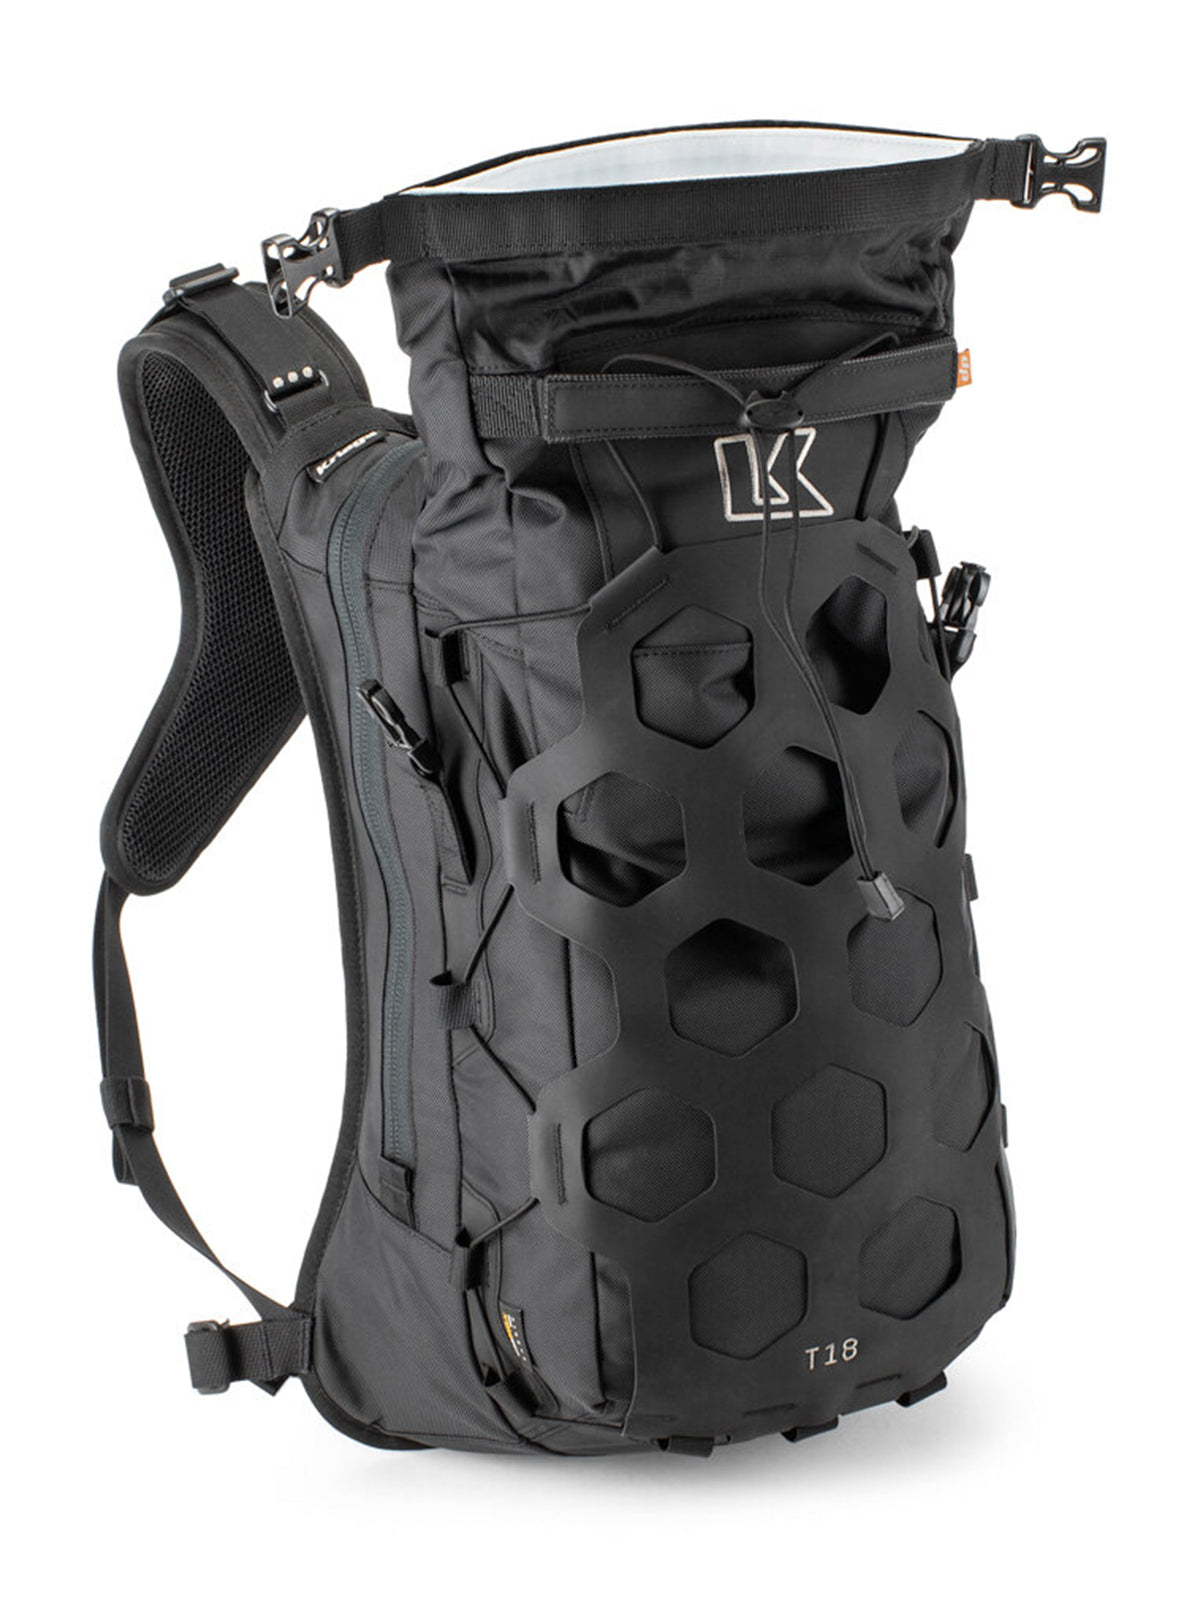 Kriega Trail18 Adventure Backpack opened